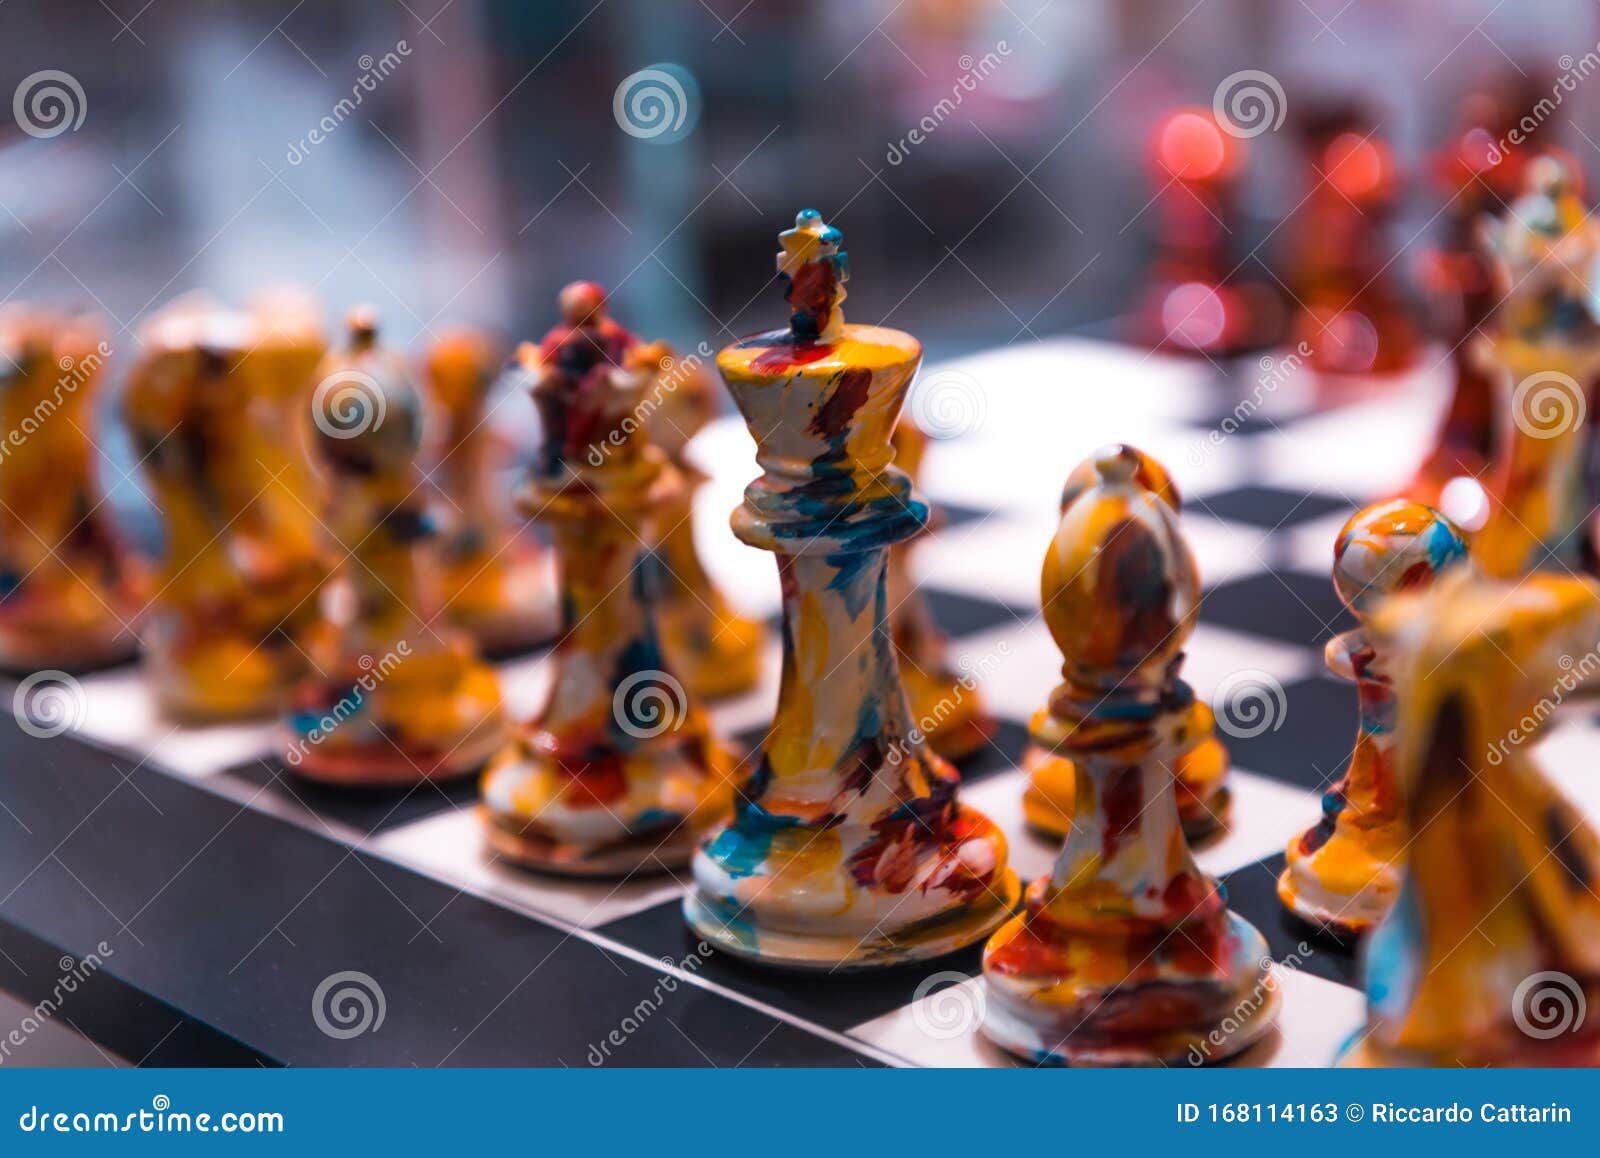 precious chess in `la rinascente, milano